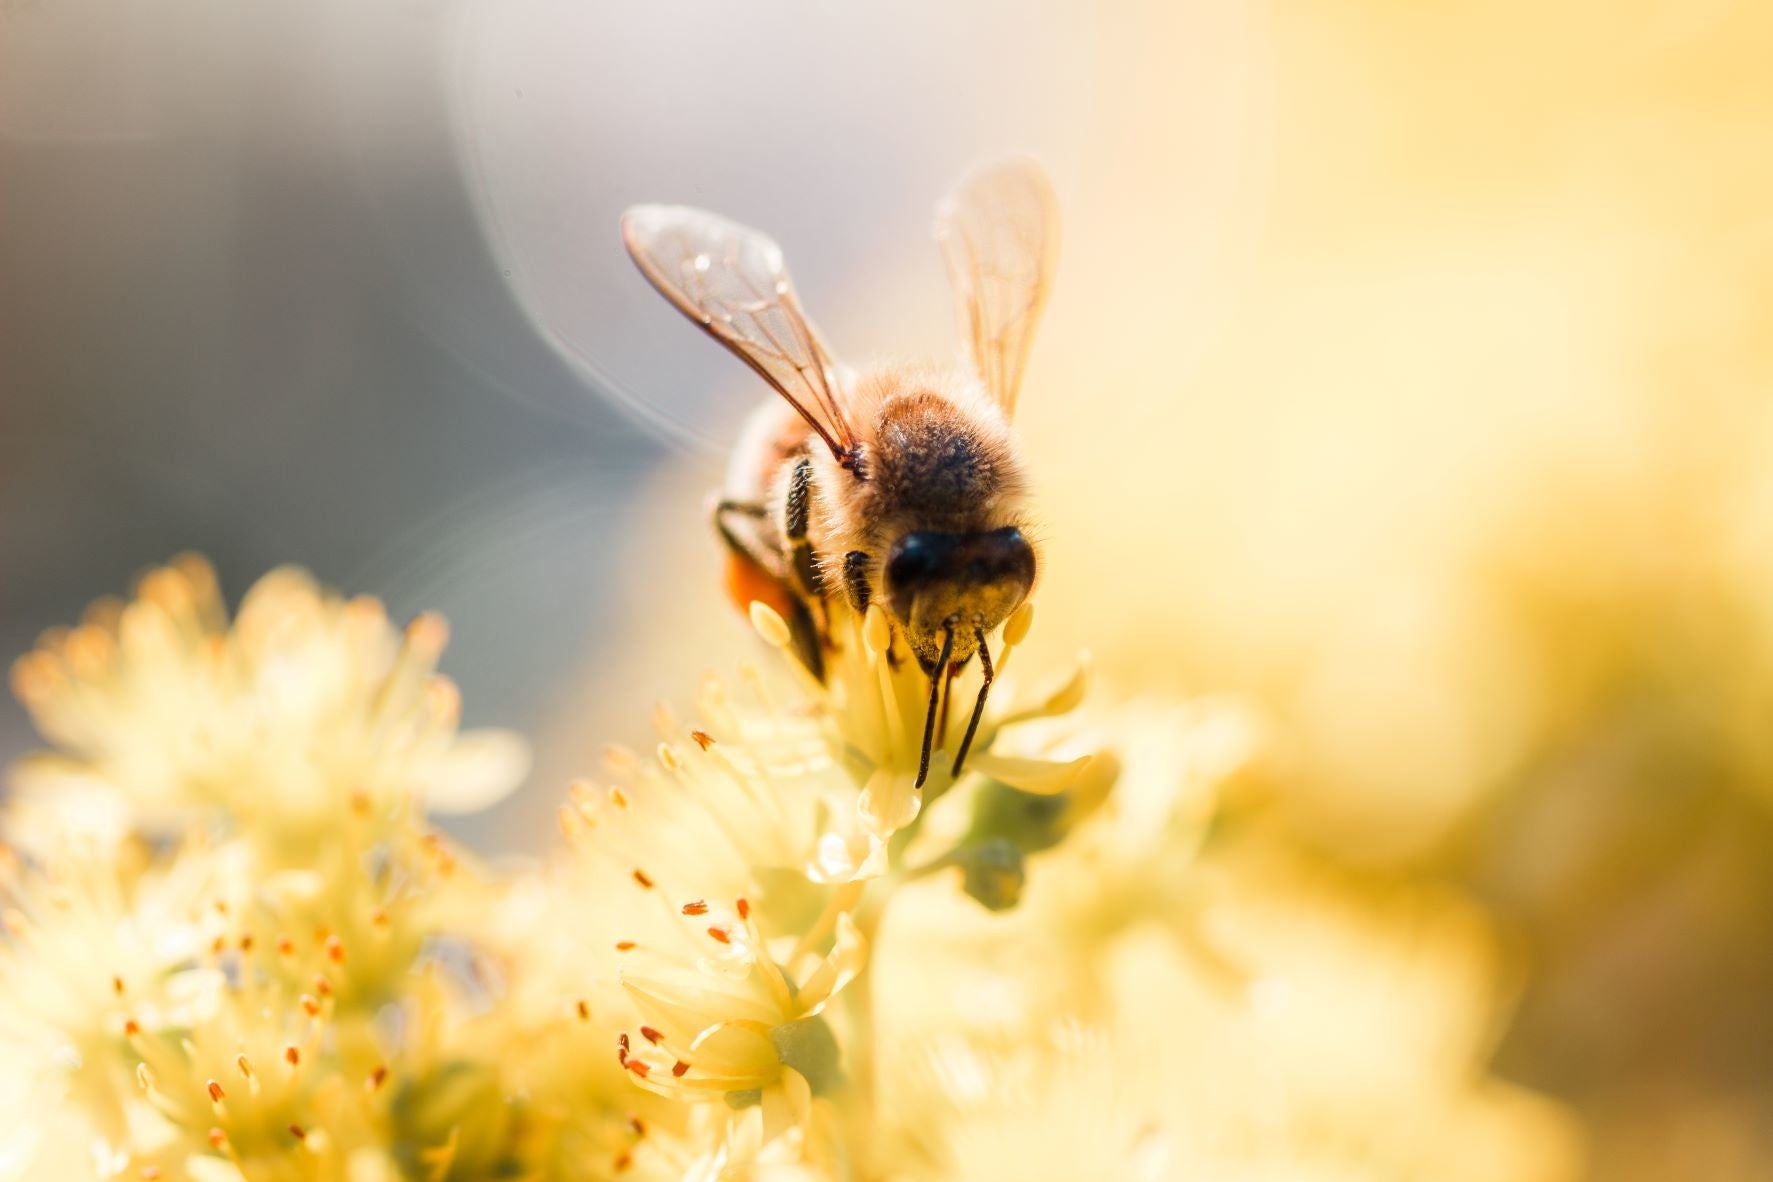 ゲラン、5月20日「世界ミツバチの日」に世界的寄付活動を実施